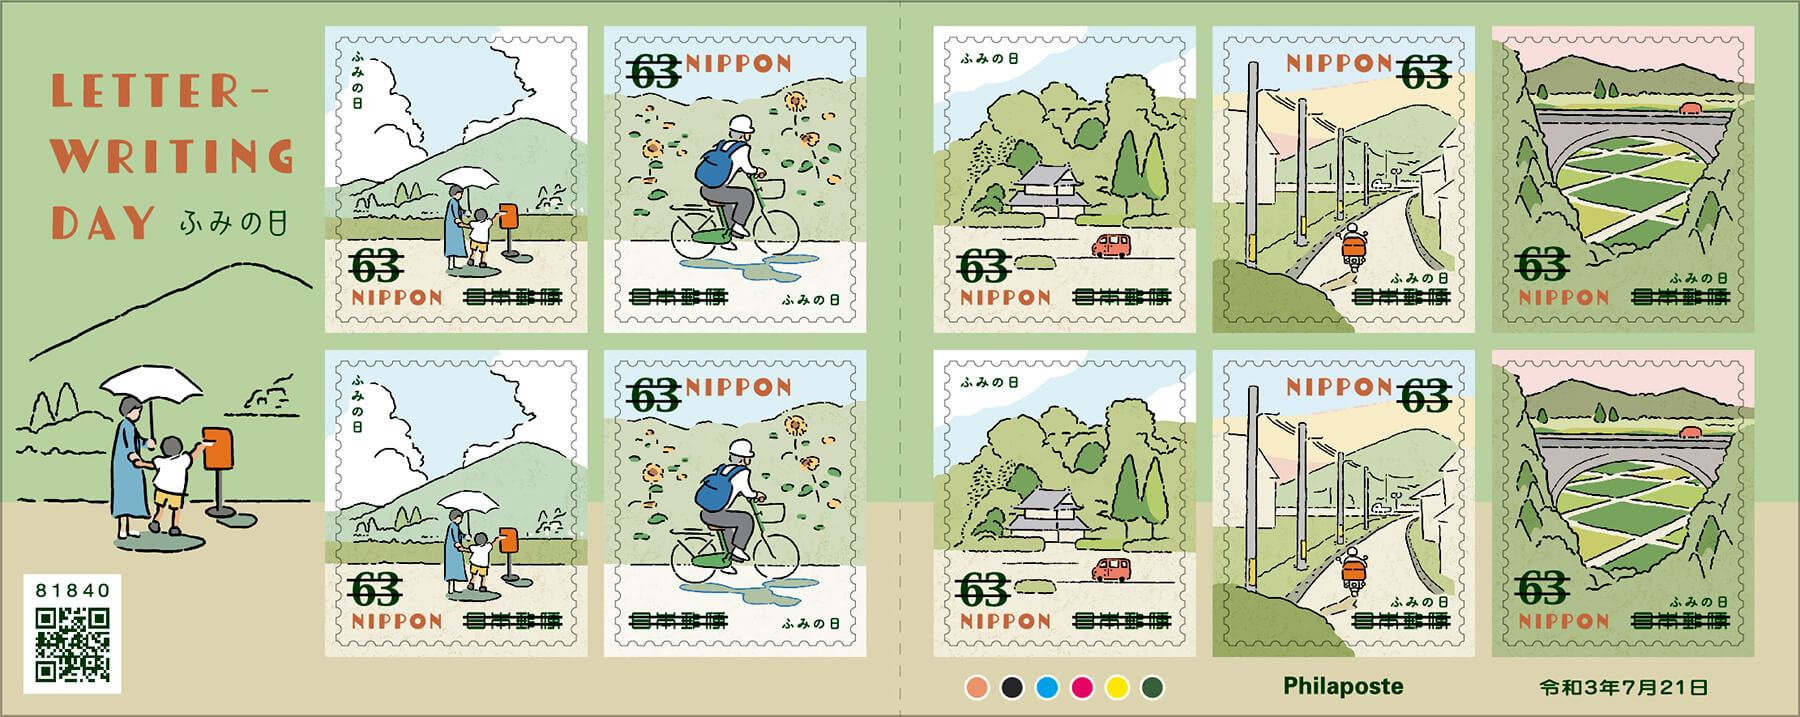 ふみの日にちなむ郵便切手」63円郵便切手／2021年7月21日発行